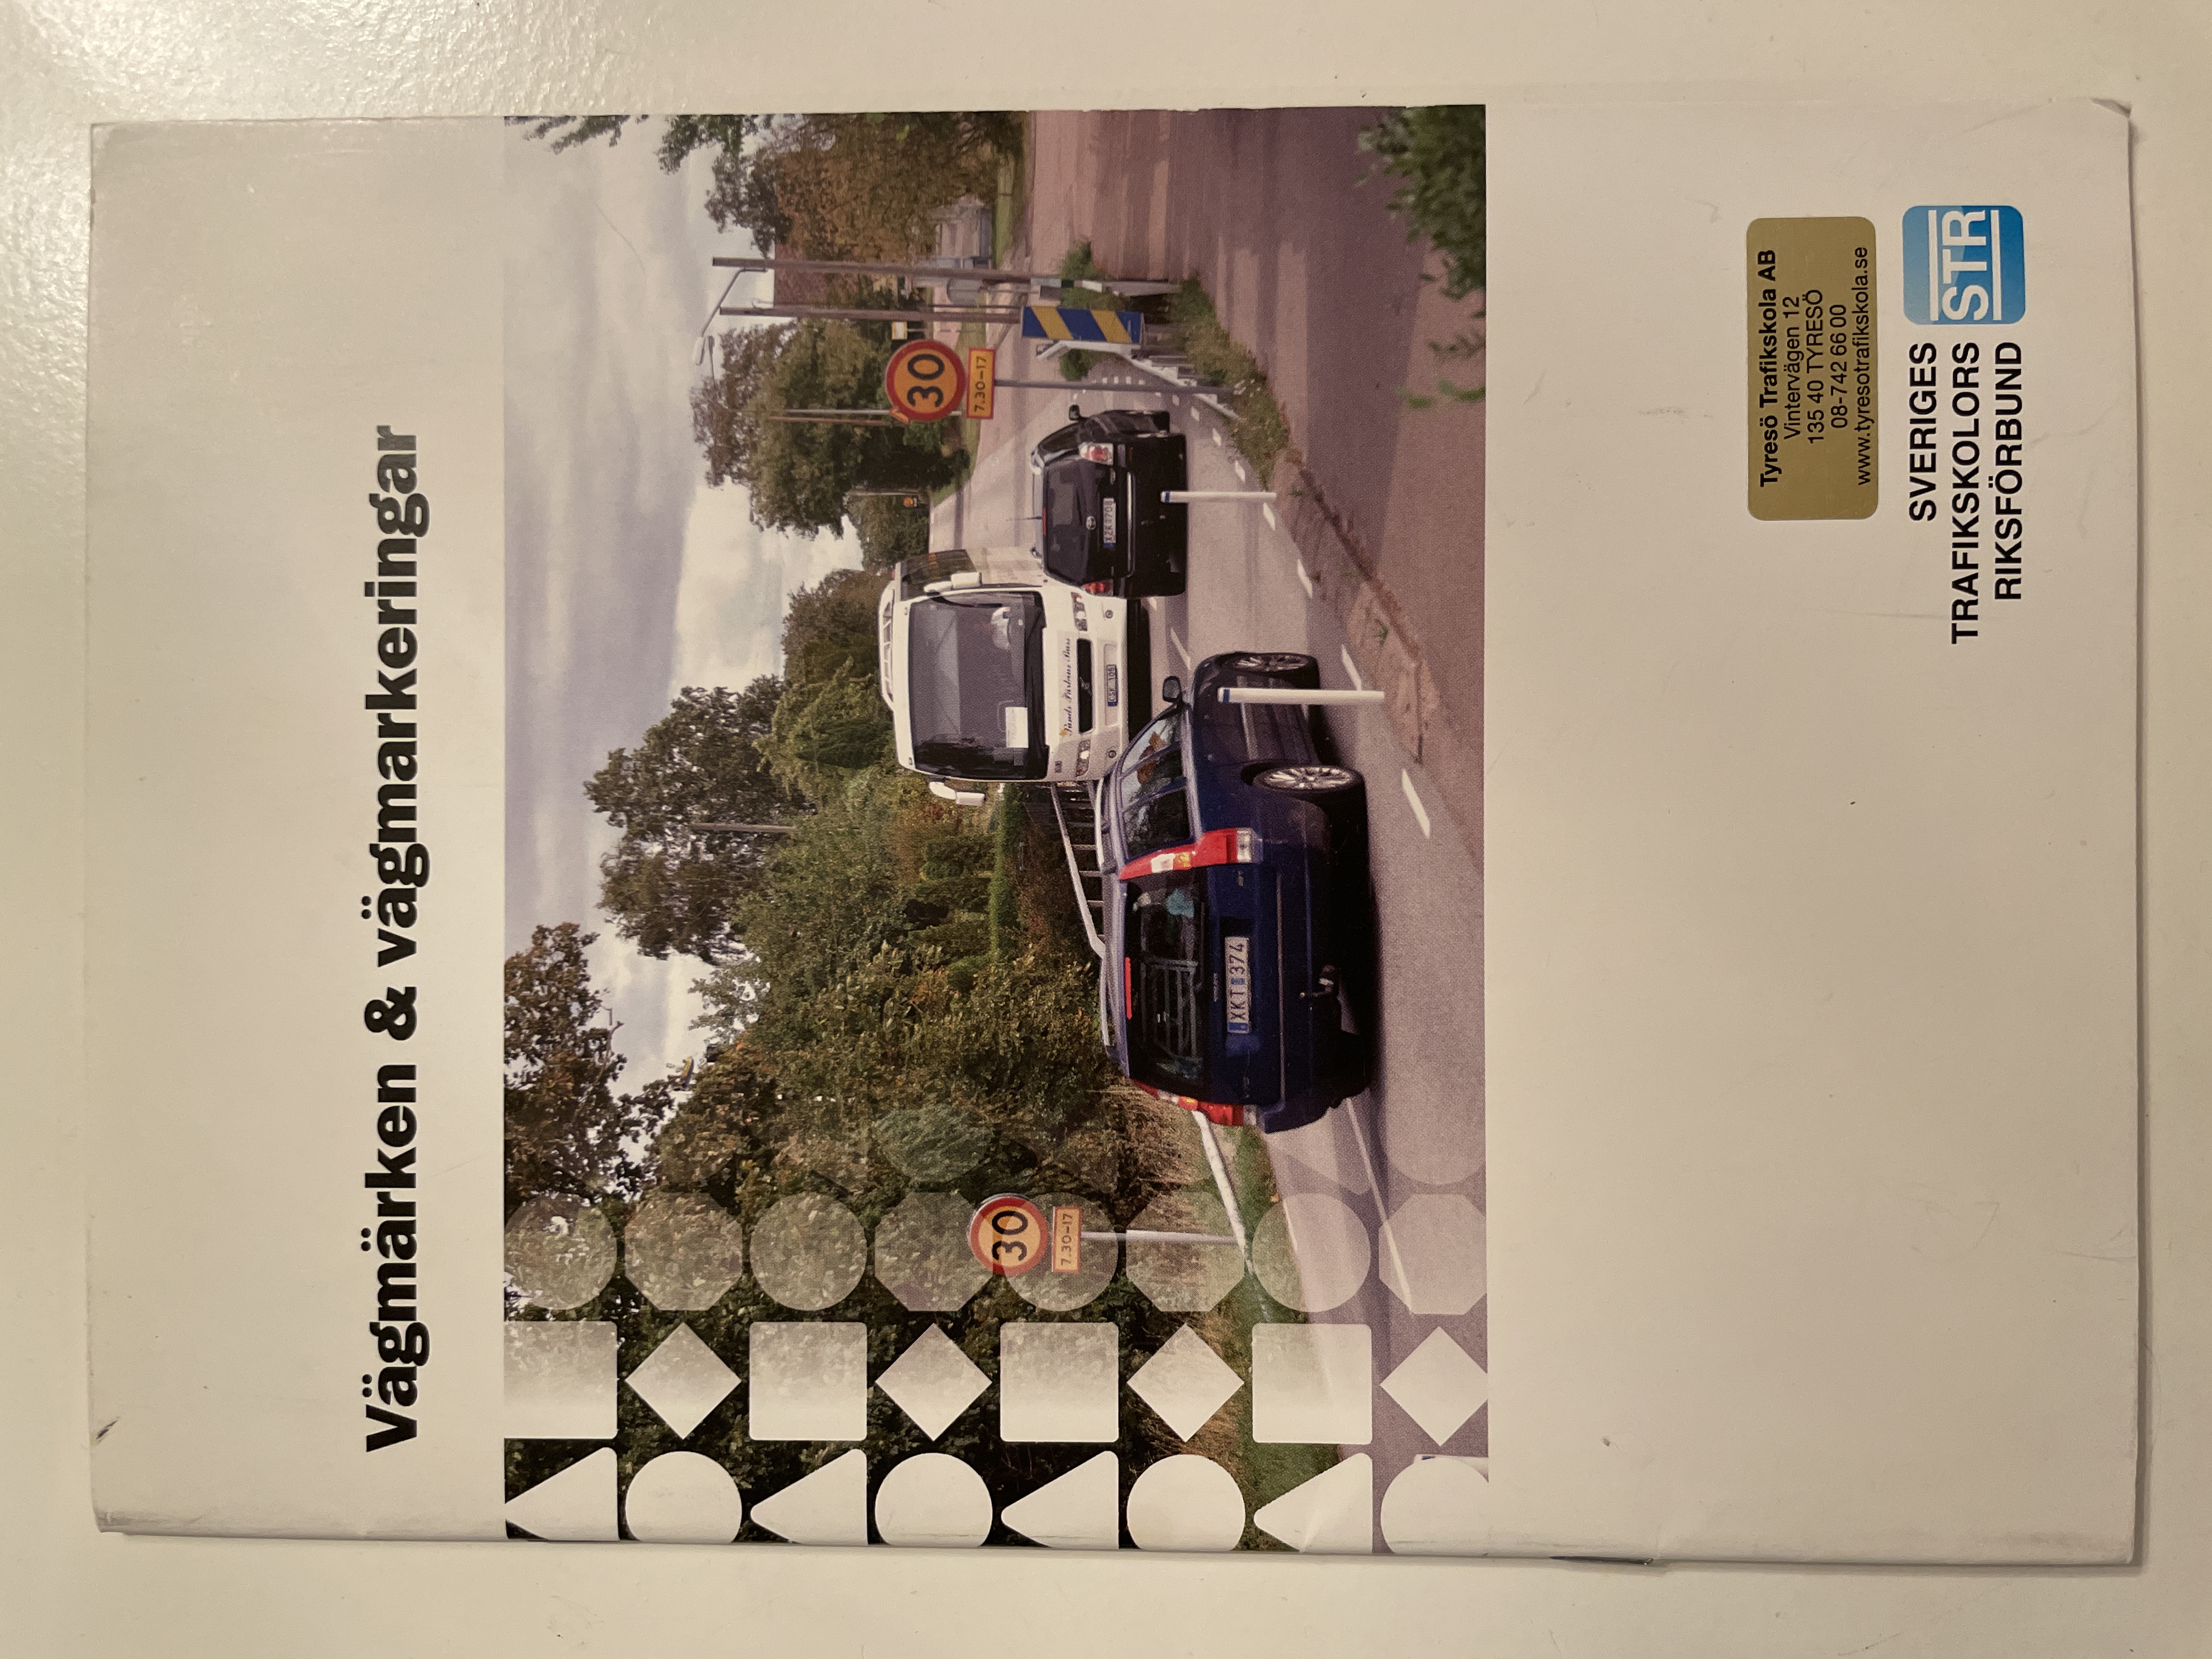 Vägmärken & vägmarkeringar; Sveriges trafikskolors riksförbund, Sveriges trafikutbildares riksförbund; 2014